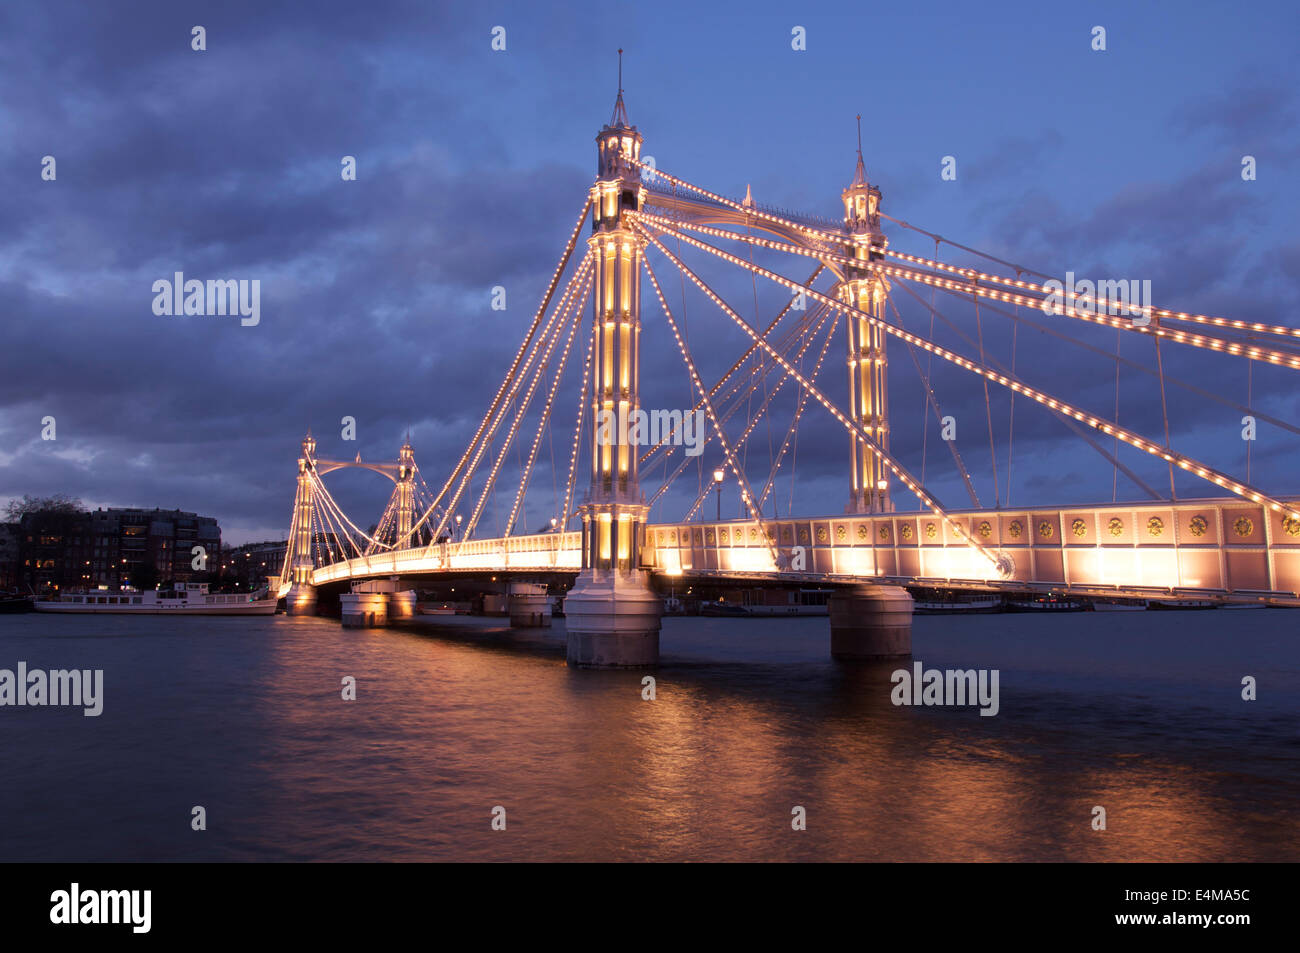 La lumineuse splendeur victorienne d'Albert Bridge, allumé à la tombée de la nuit, en traversant la Tamise entre Battersea et Chelsea. Londres, Angleterre. UK. Banque D'Images